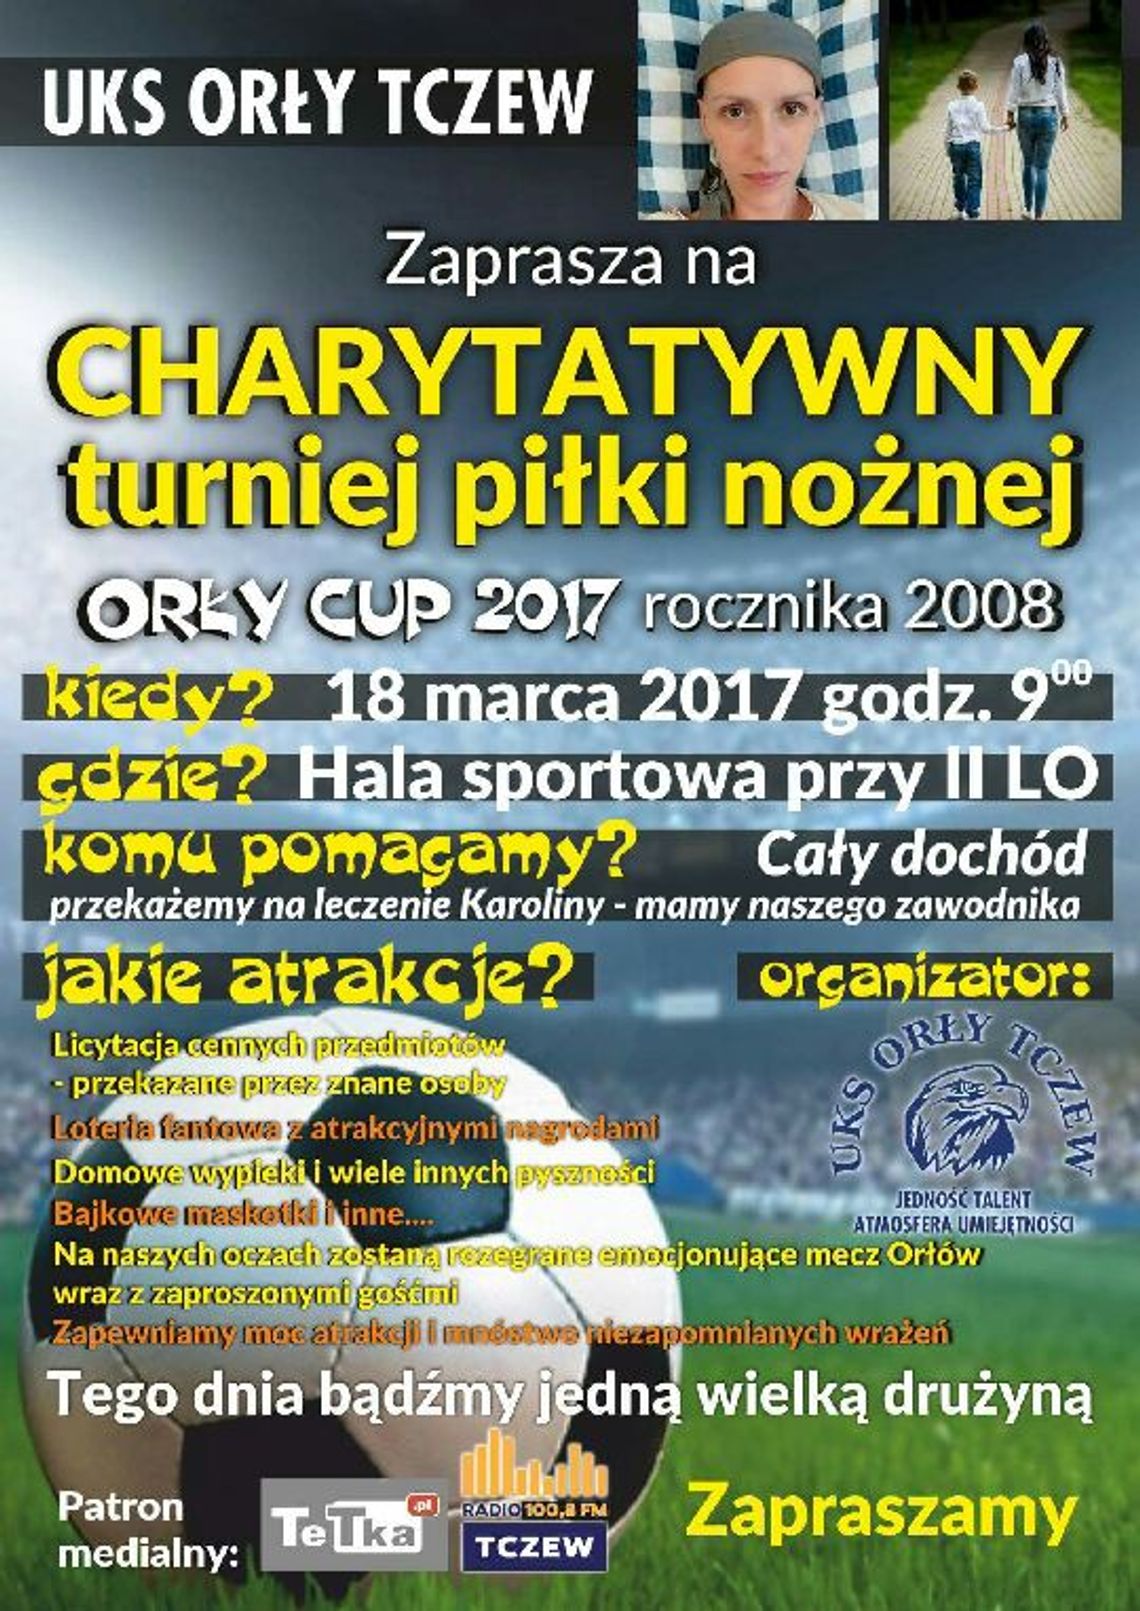 Charytatywny turniej piłki nożnej UKS Orły Tczew